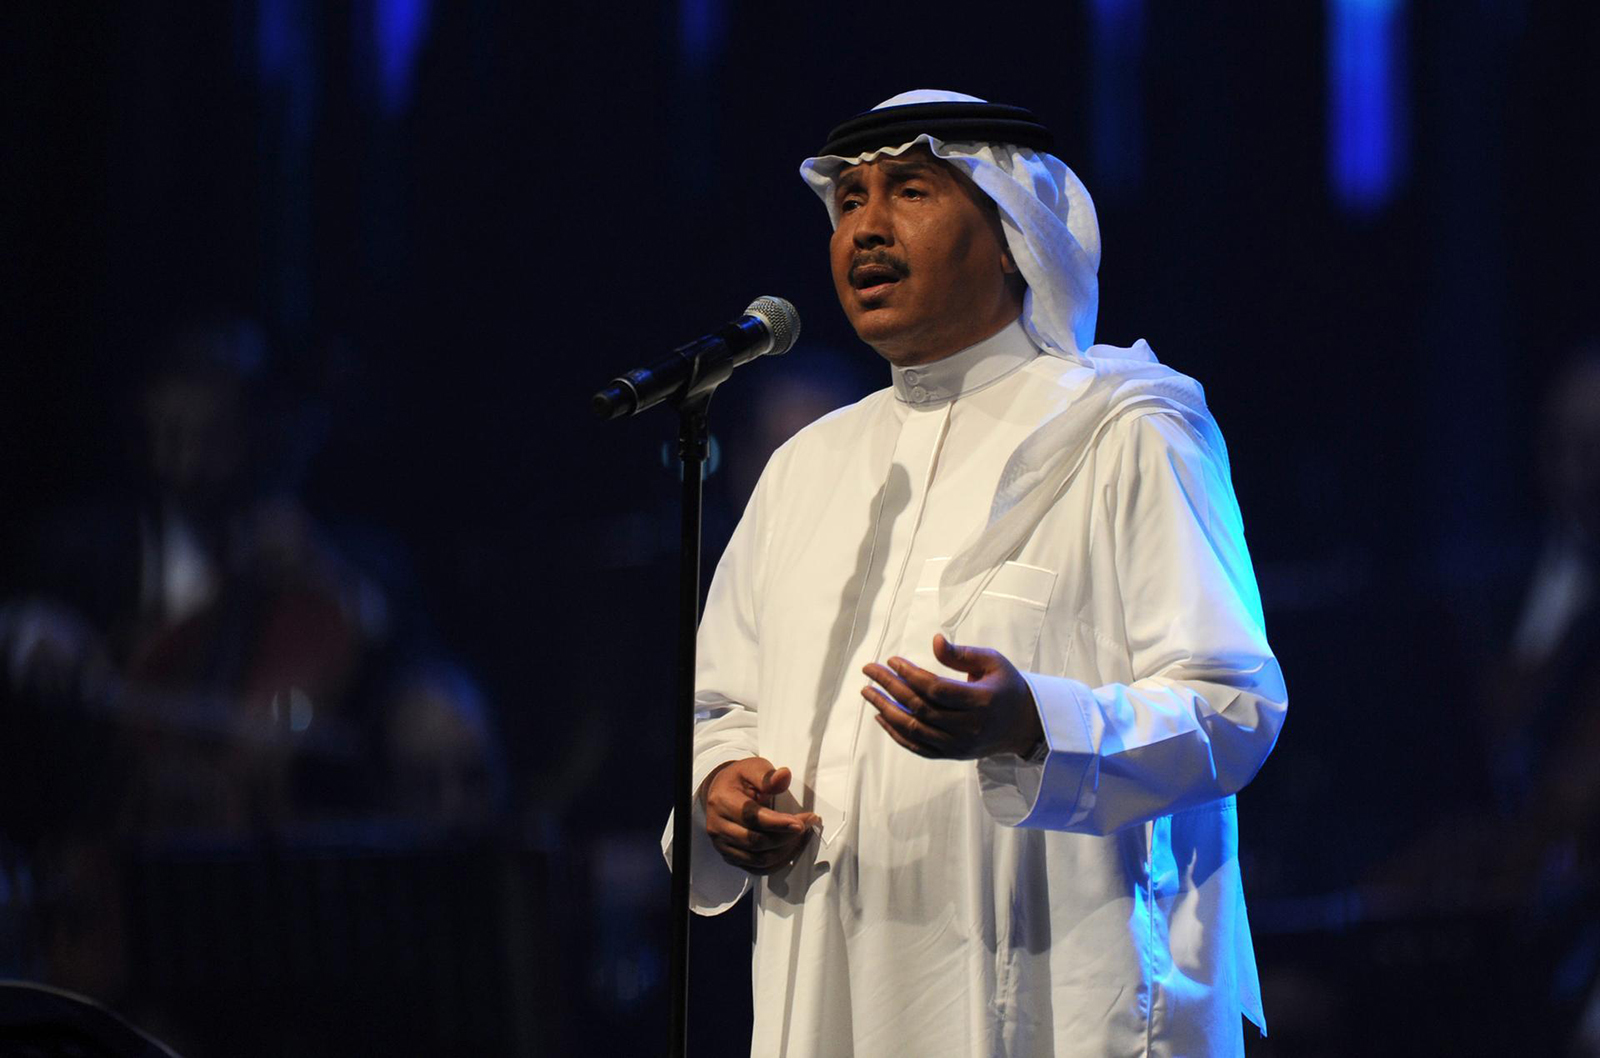 الفنان السعودي محمد عبده يُعلن إصابته بالسرطان